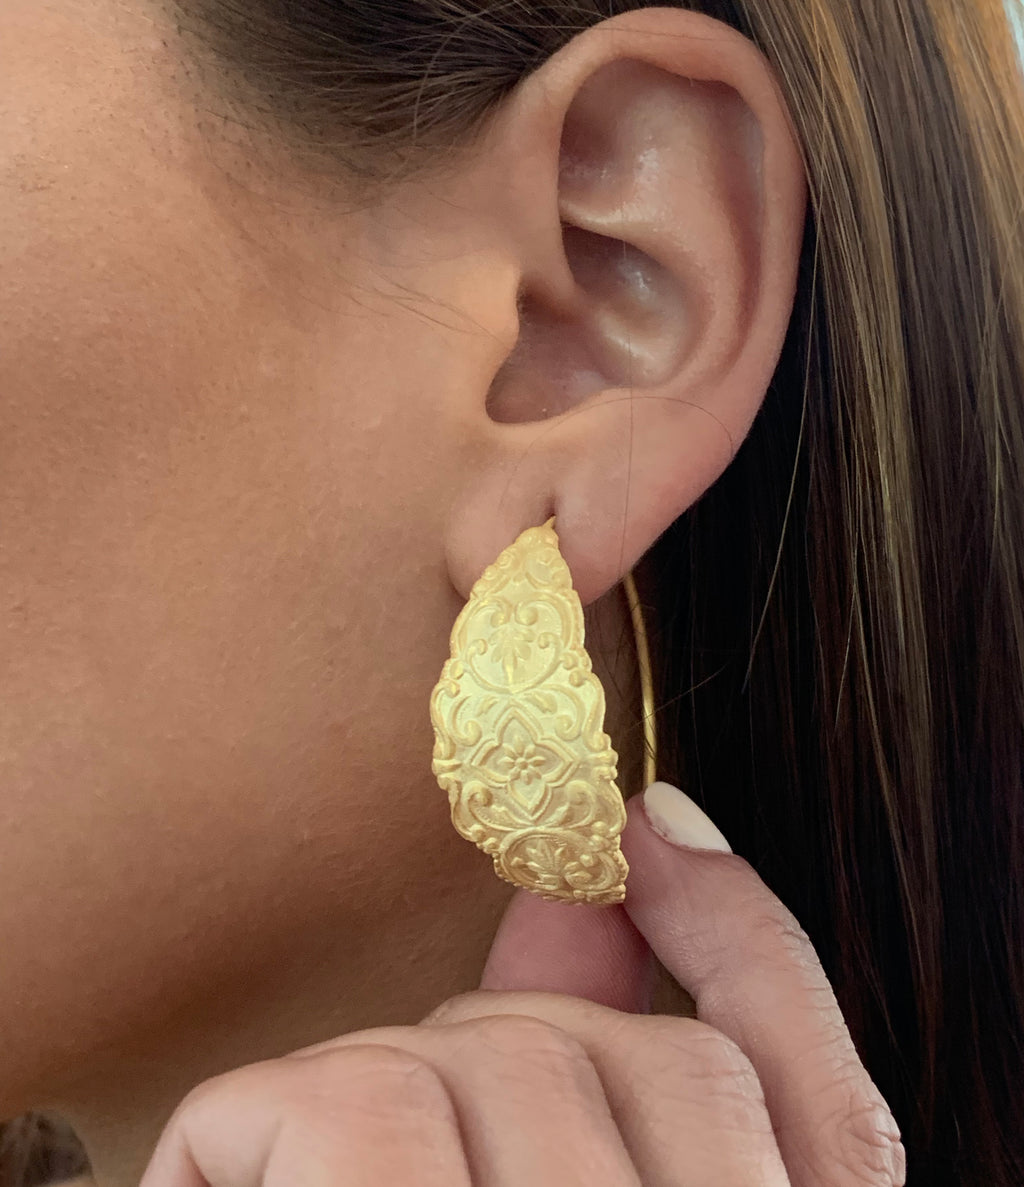 Wonderful engraved earrings